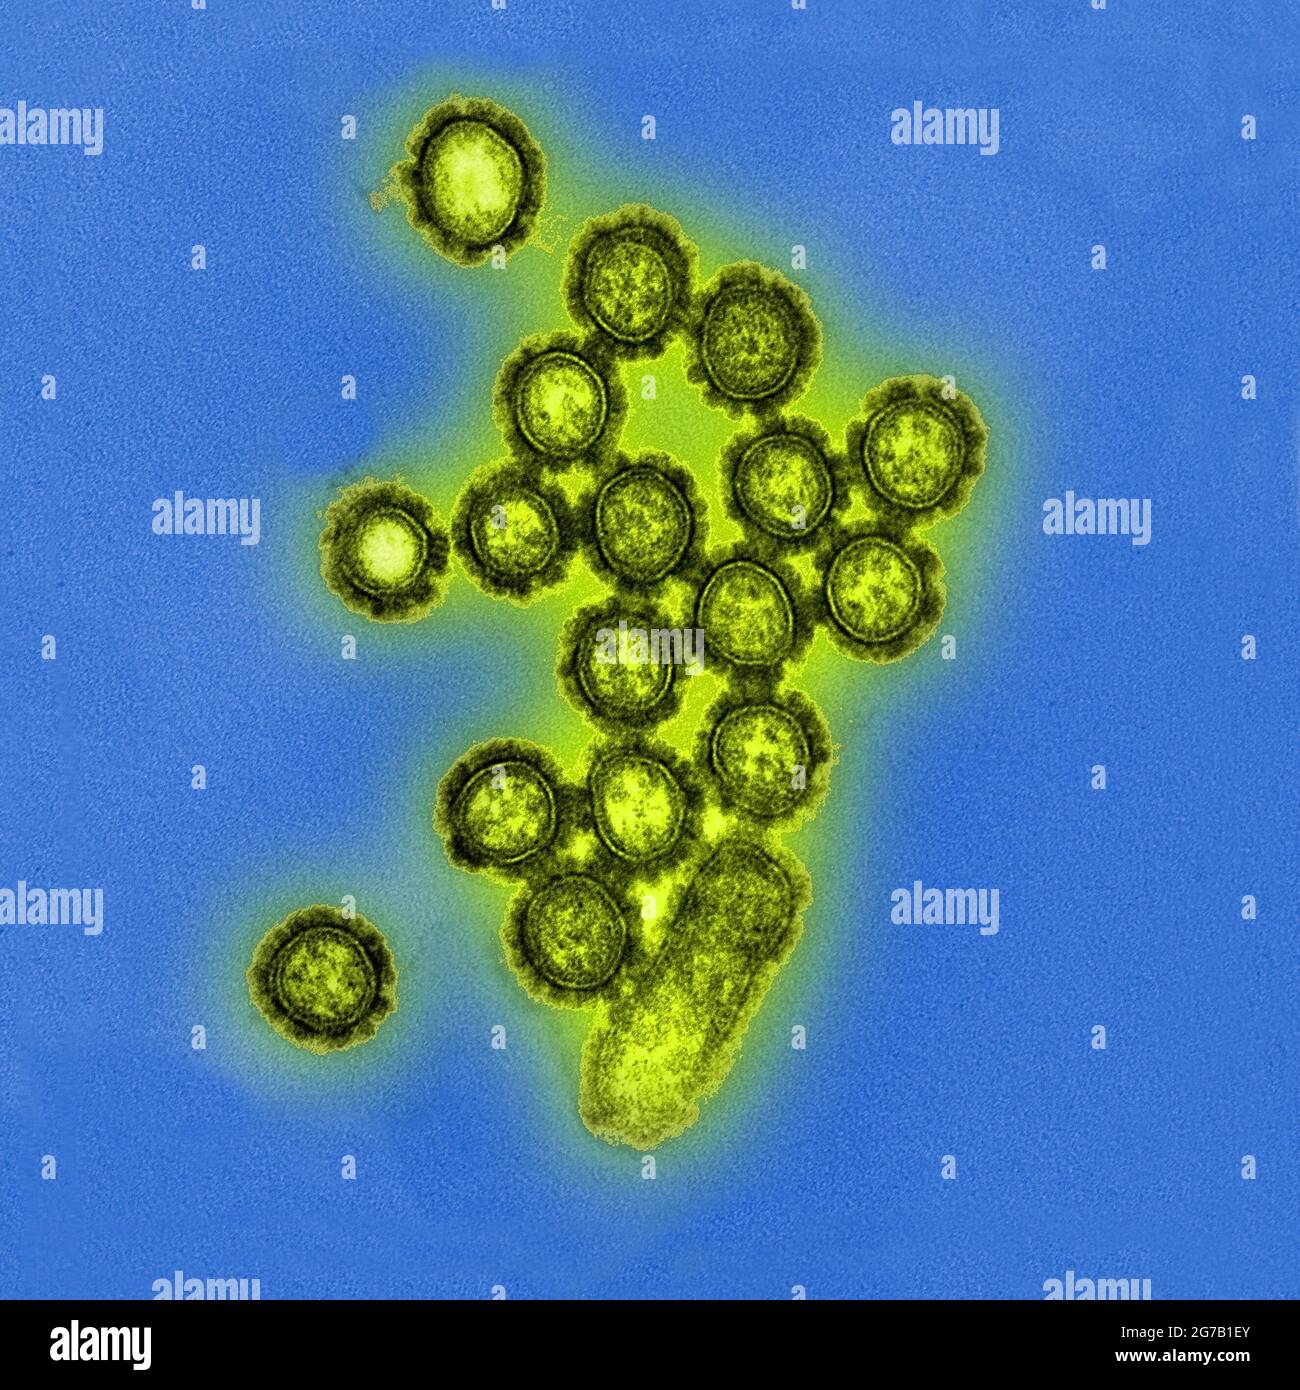 Diese digital kolorierte, mikroskopische Transmissionselektronenaufnahme (TEM) des US National Institute of Allergy and Infectious Diseases (NIAID) zeigt eine Anzahl von H1N1-Influenza-Viruspartikeln. Oberflächenproteine, die sich auf der Oberfläche der Viruspartikel befinden, sind schwarz dargestellt. Eine optimierte und verbesserte Version eines Bildes, das vom US National Institute of Allergy and Infectious Diseases produziert wurde / Kredit: NIAID Stockfoto